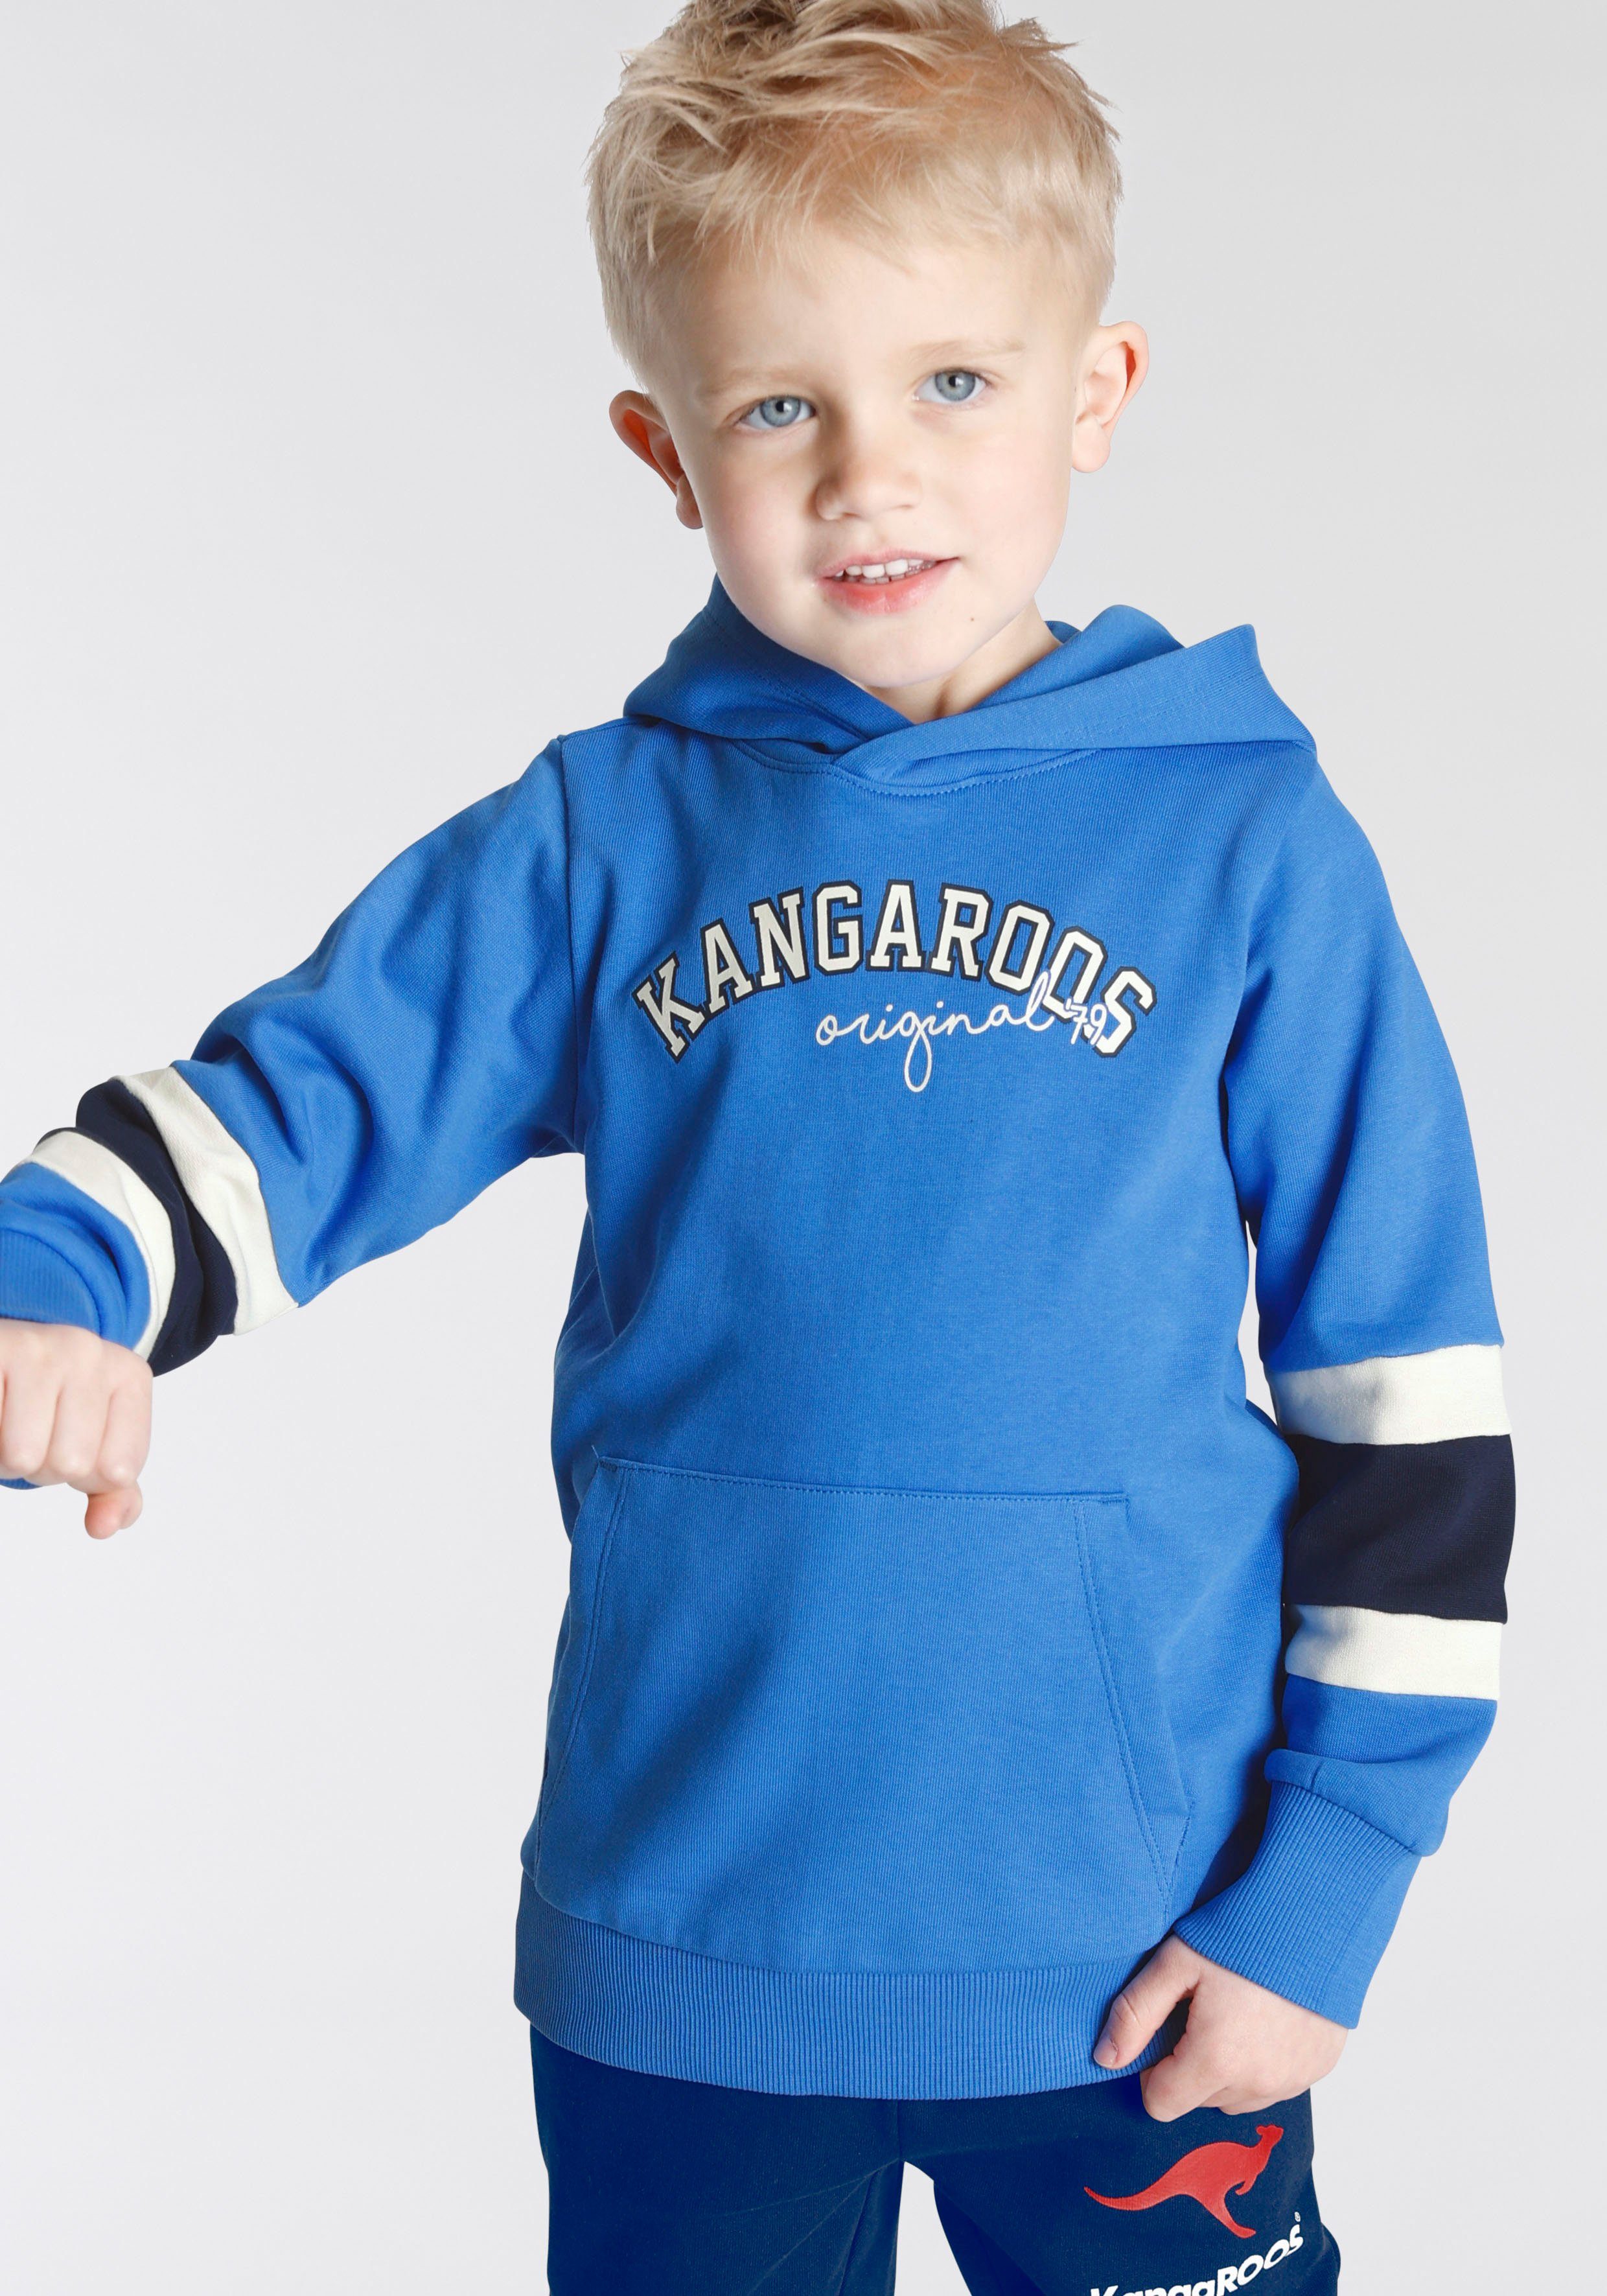 KangaROOS mit den Mini für Jungen Colorblocking, Ärmeln, Streifen an Kapuzensweatshirt